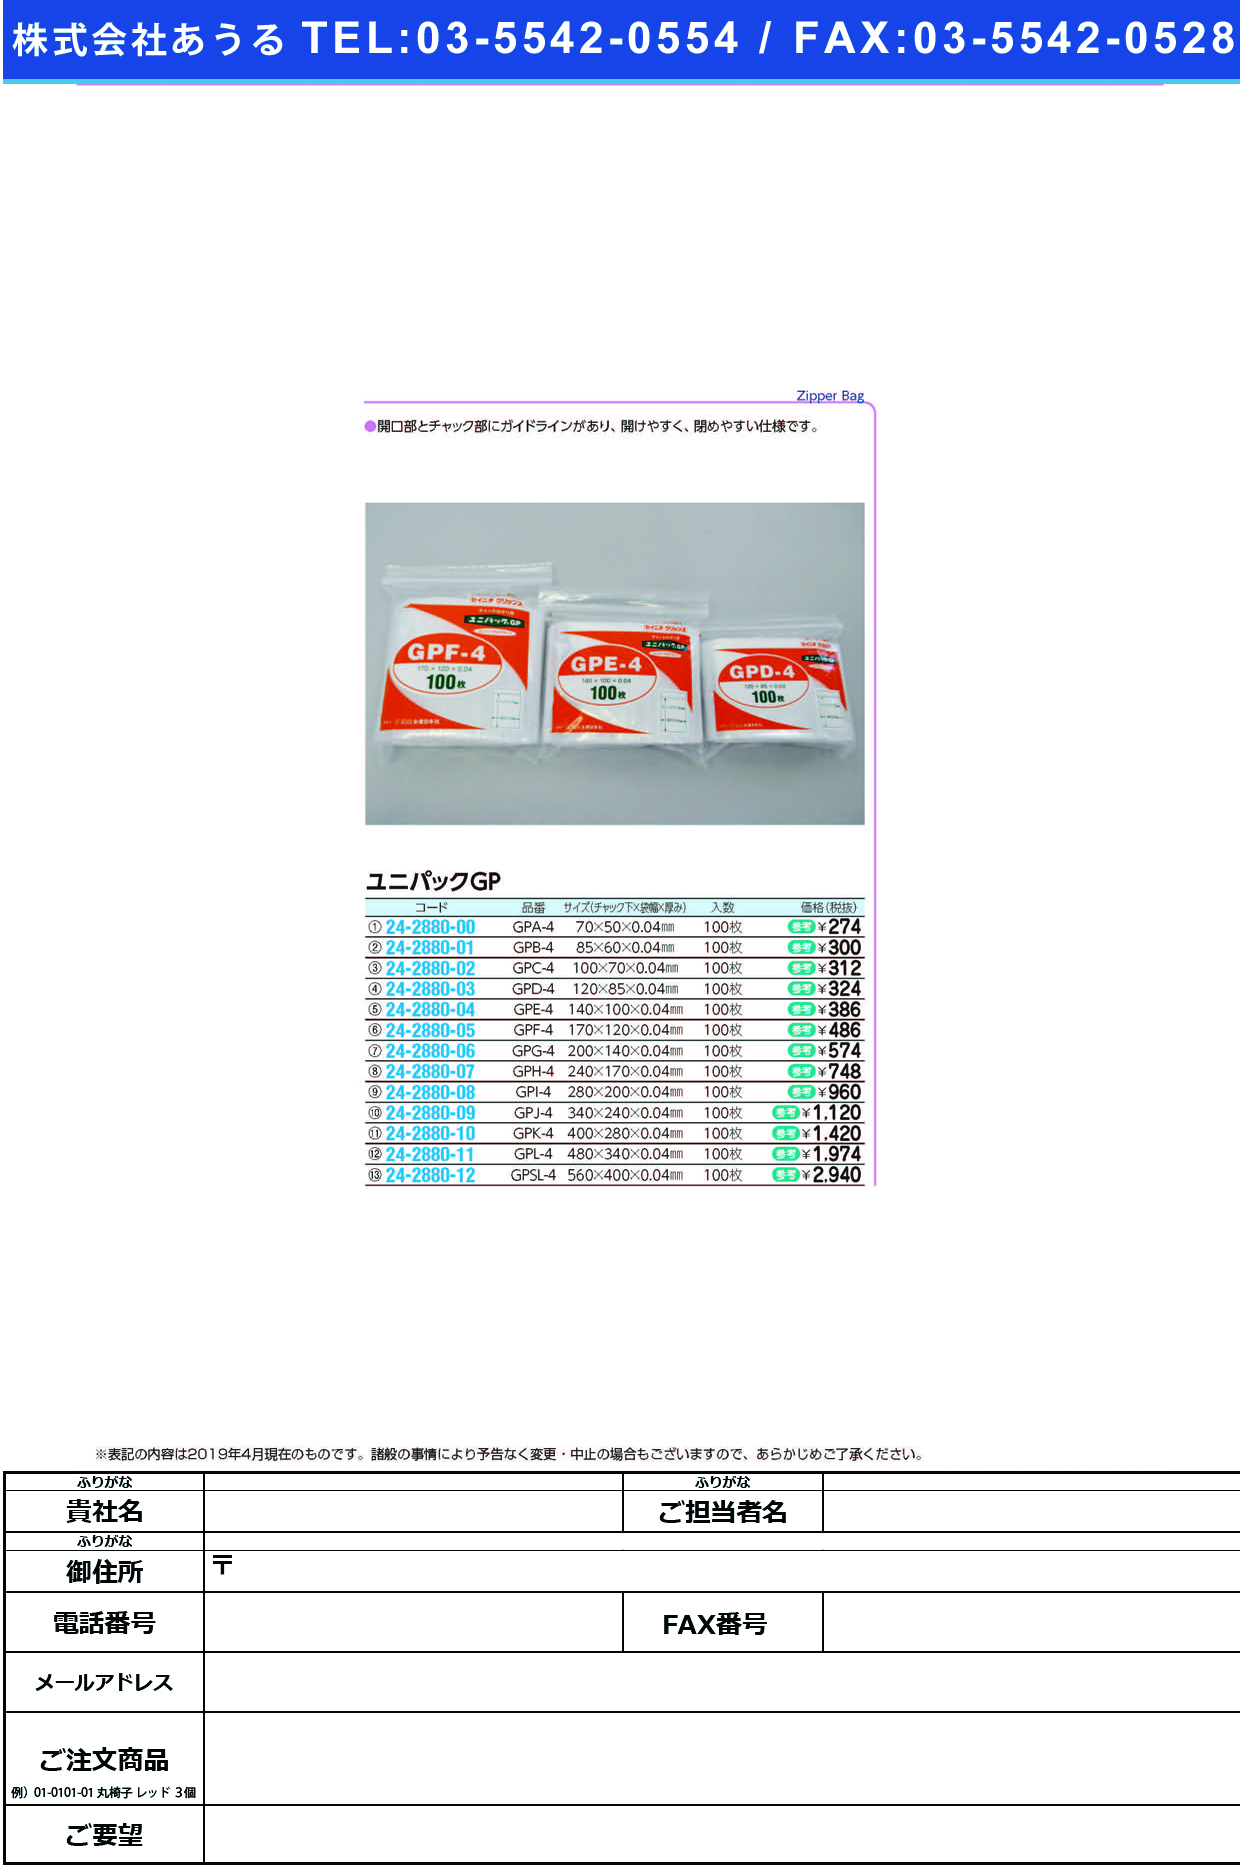 (24-2880-09)ユニパックＧＰ GPJ-4(340X240MM)100 ﾕﾆﾊﾟｯｸGP【1袋単位】【2019年カタログ商品】